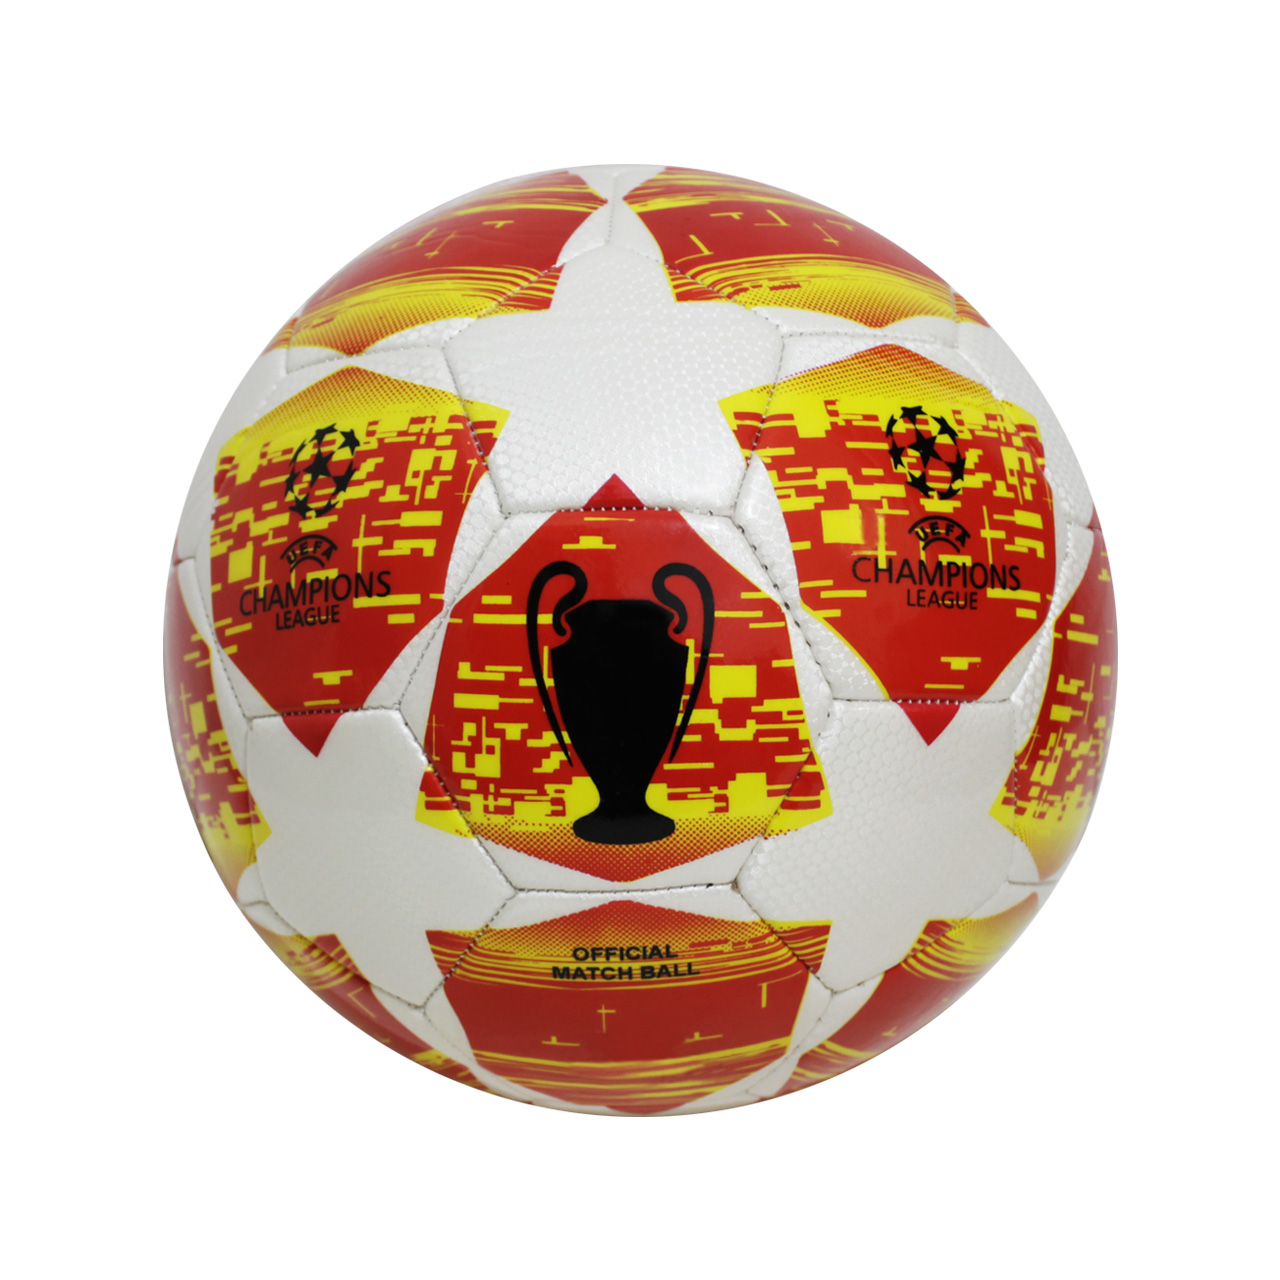 آنباکس توپ فوتبال مدل Champions League GKI 1220 در تاریخ ۰۳ فروردین ۱۳۹۹